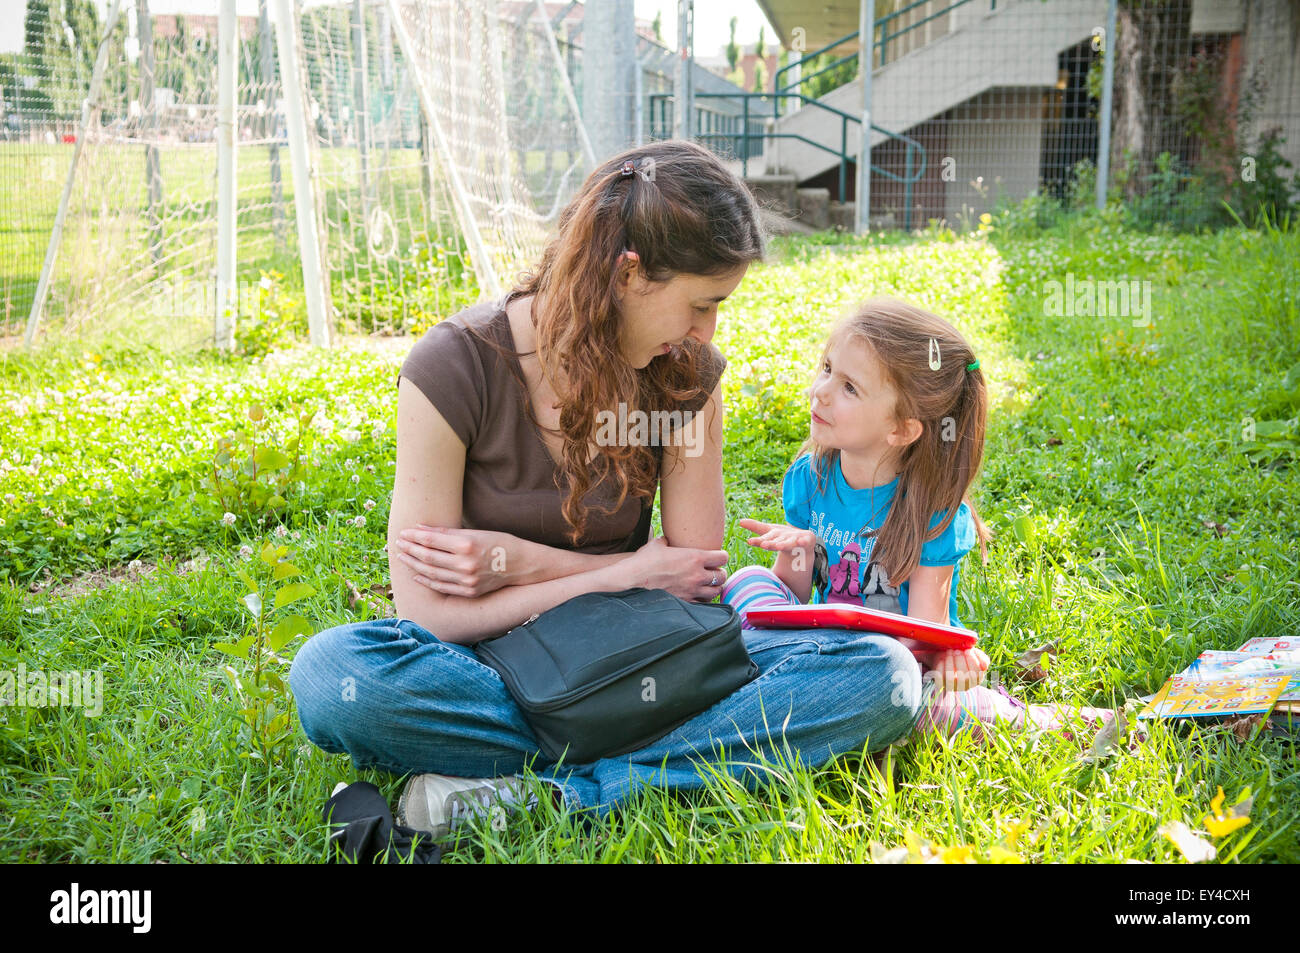 Femme et enfant jouant tout en étant assis dans l'herbe Banque D'Images